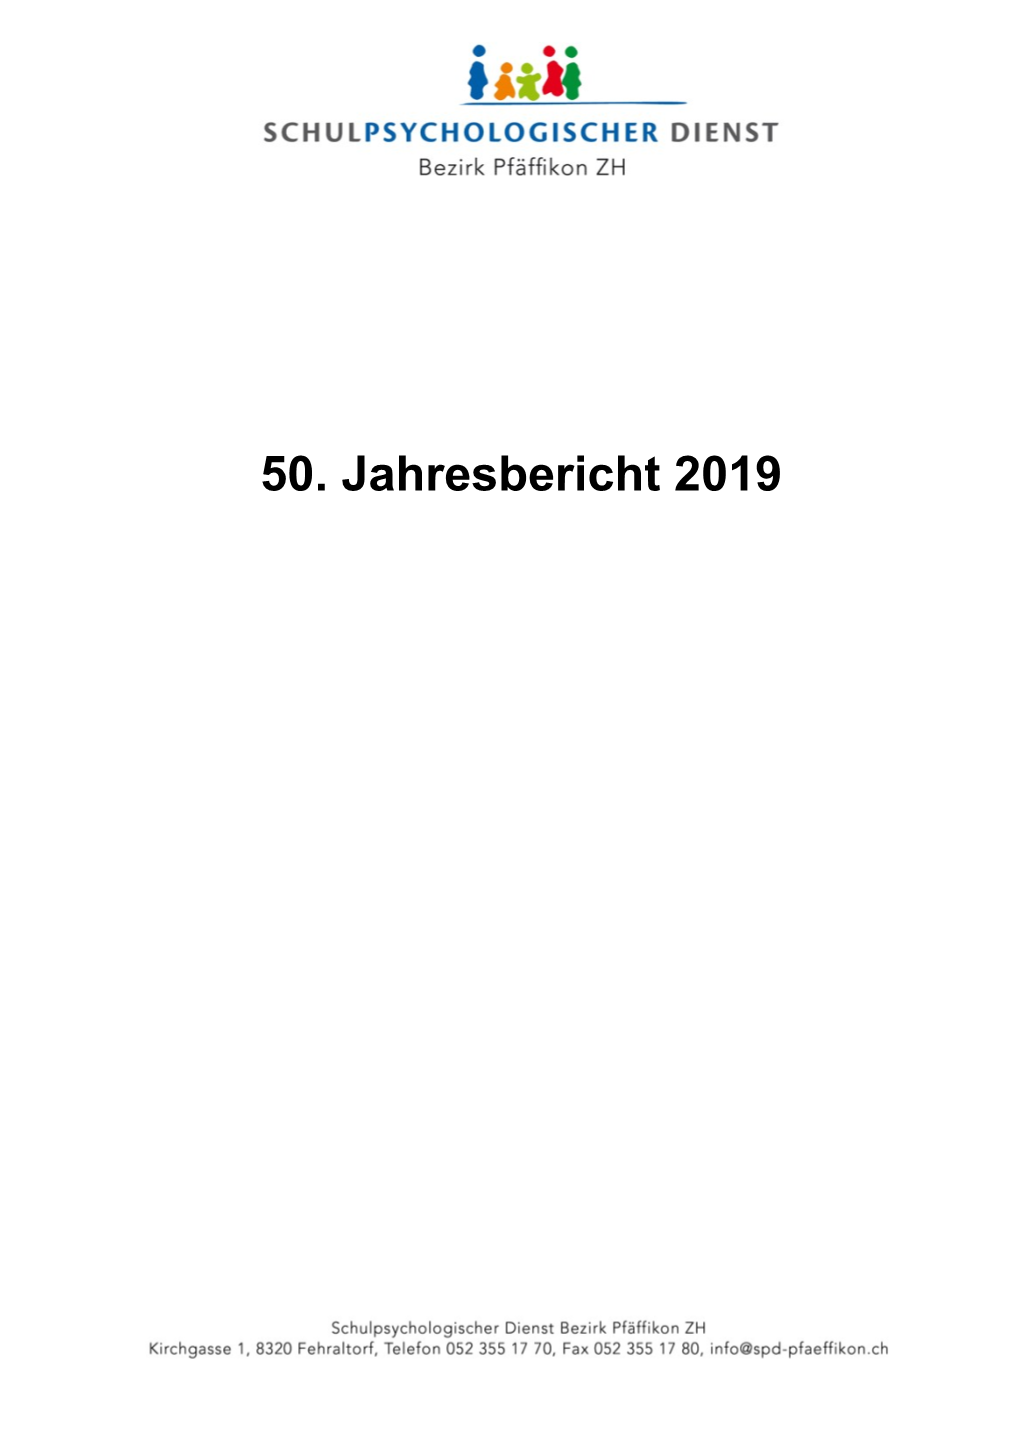 Jahresbericht 2019